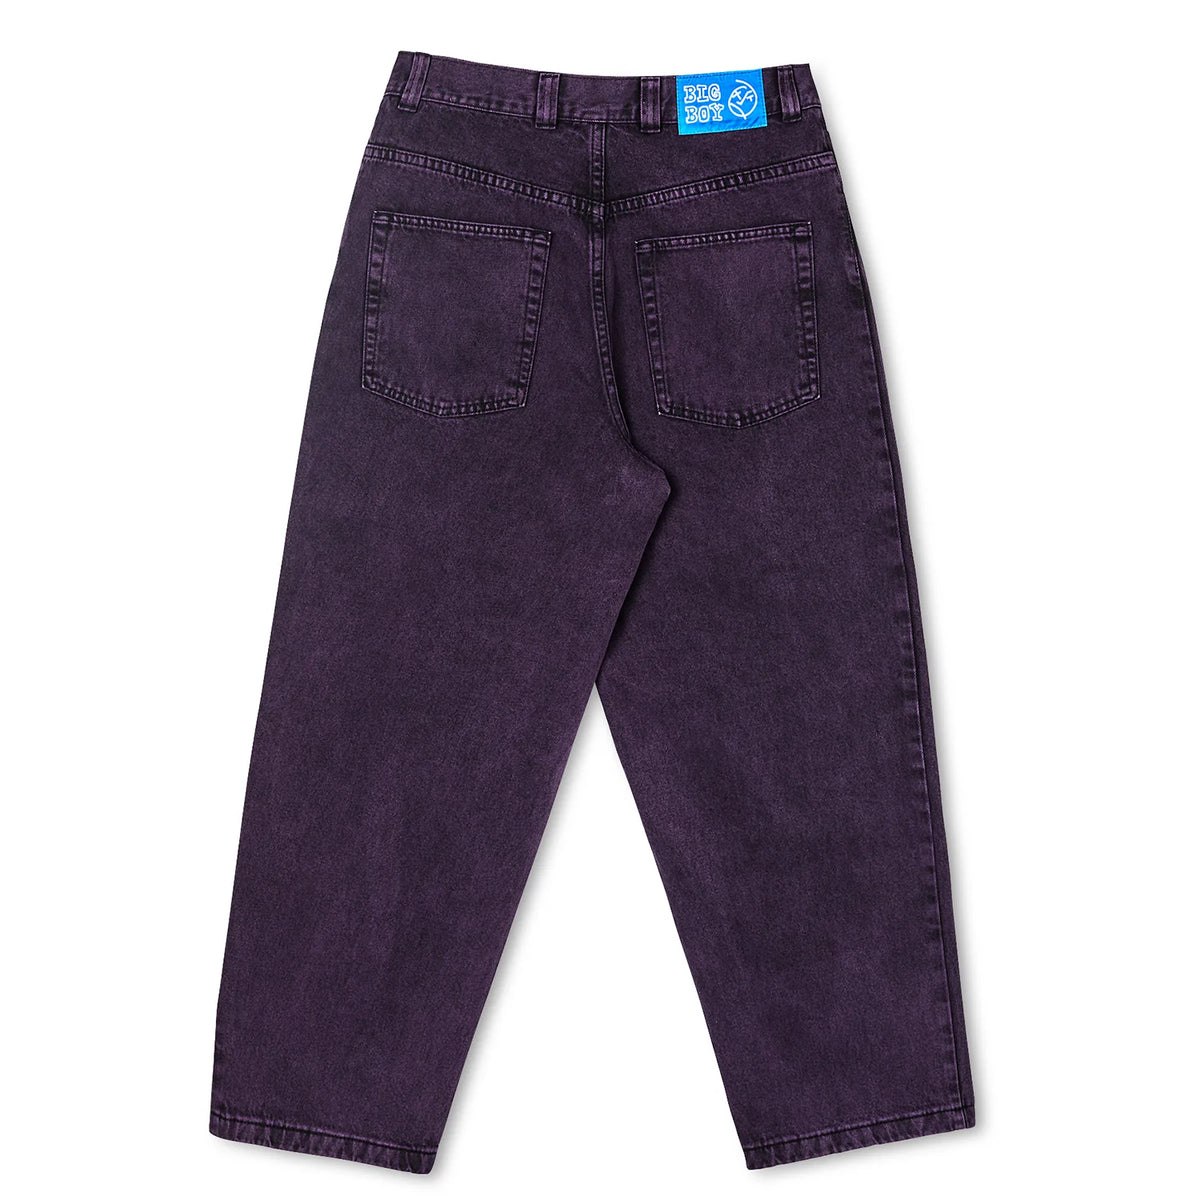 Polar Skate Co Big Boy Jeans - Purple Black